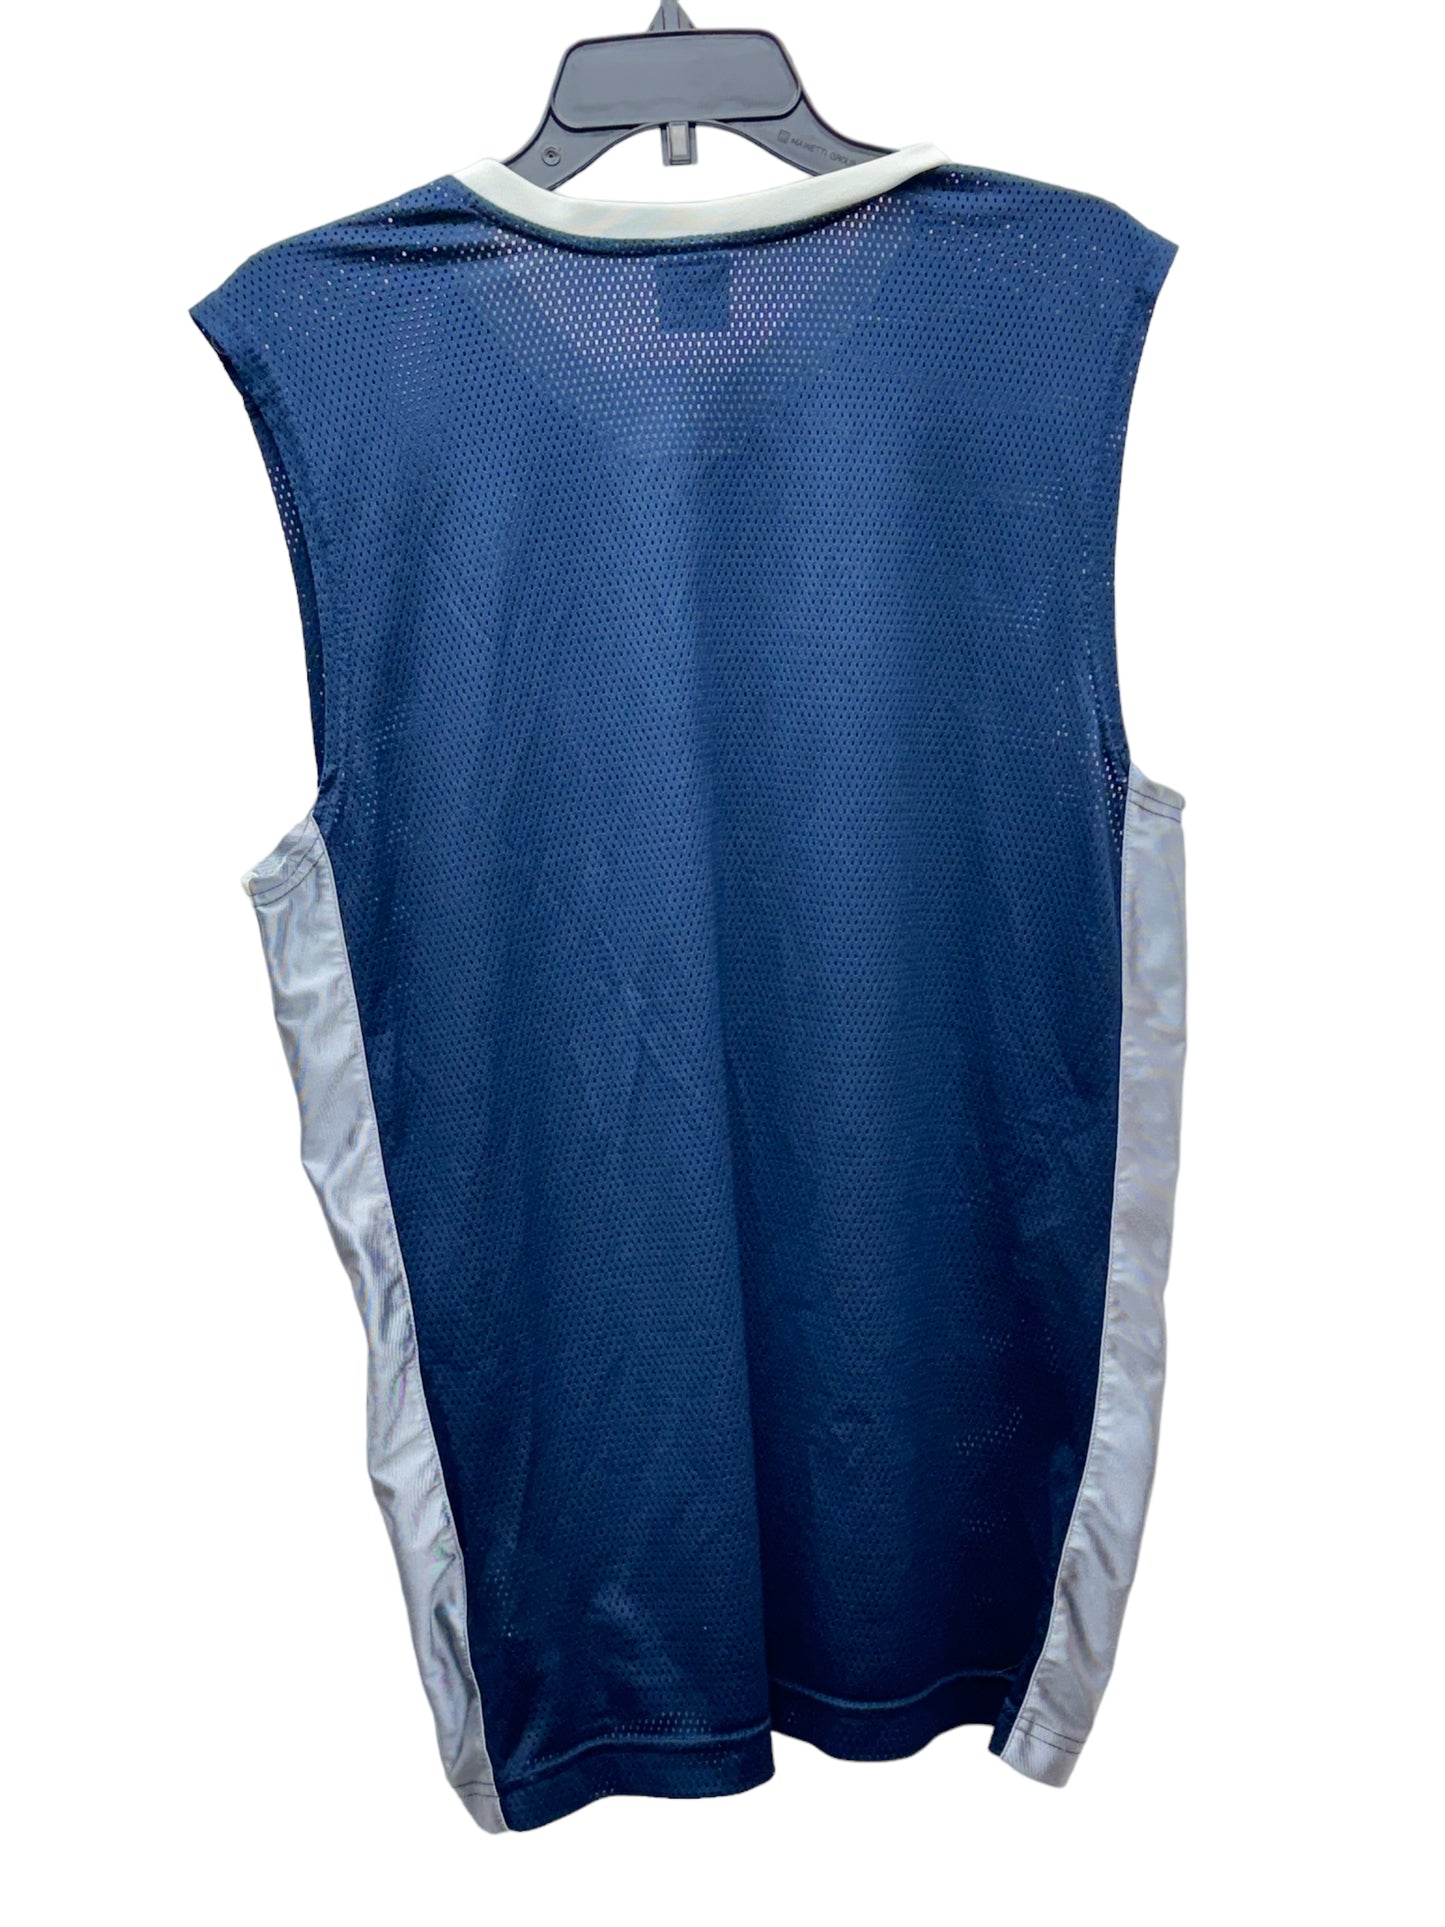 Vintage Nike Men’s Sleeveless Athletic T-Shirt Blue - Size Large